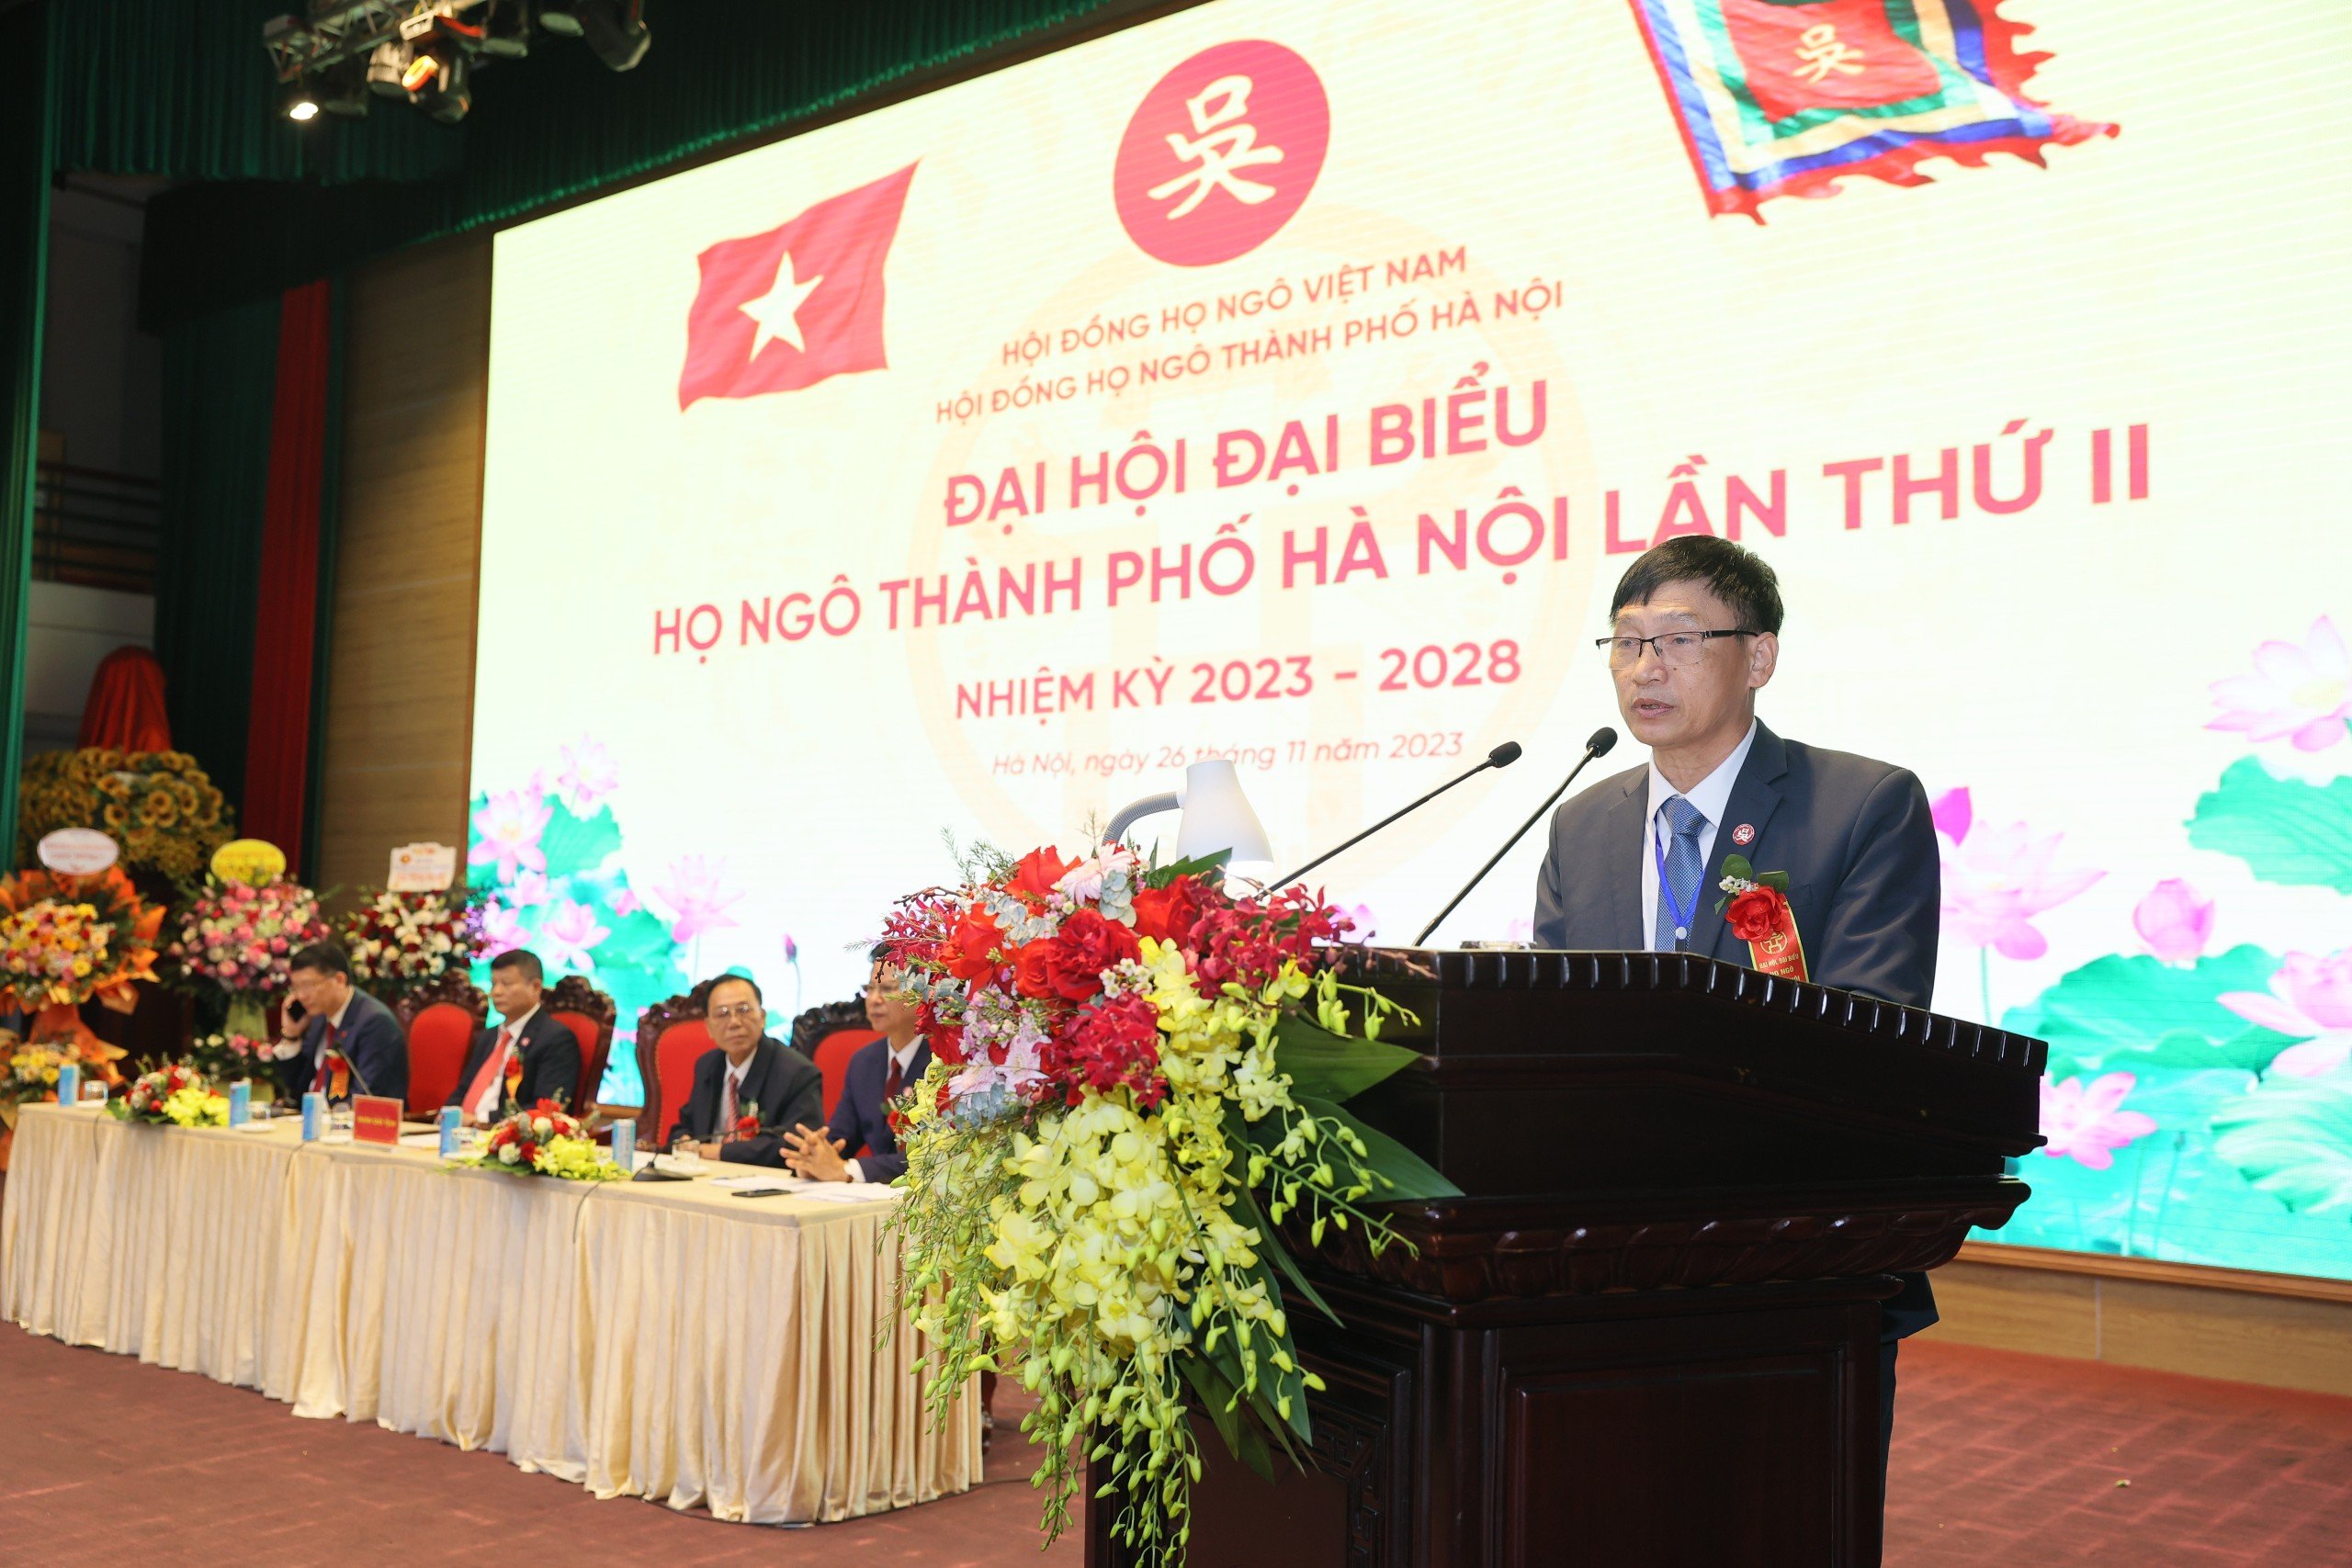 Ông Ngô Vi Tiết, Chủ tịch Hội đồng họ Ngô thành phố Hà Nội phát biểu khai mạc.